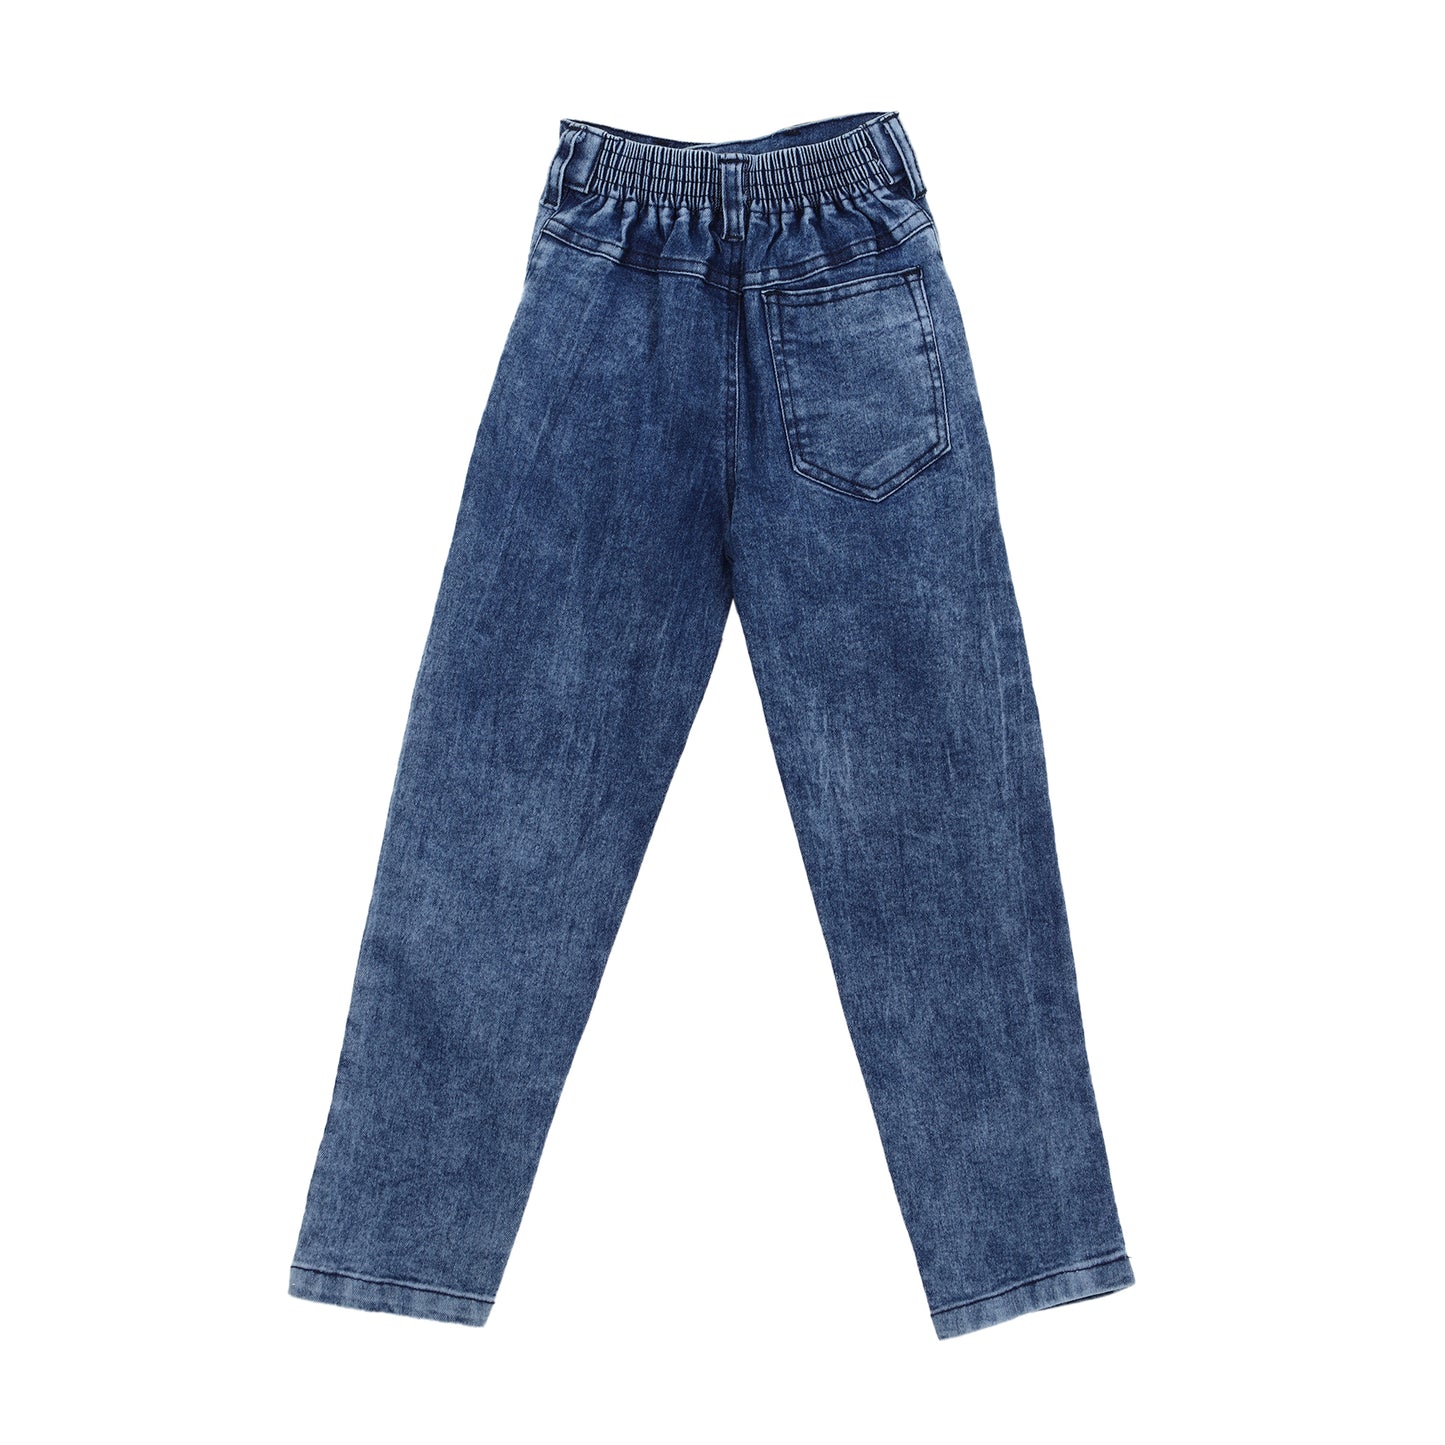 Denim Jeans for Boys - 3